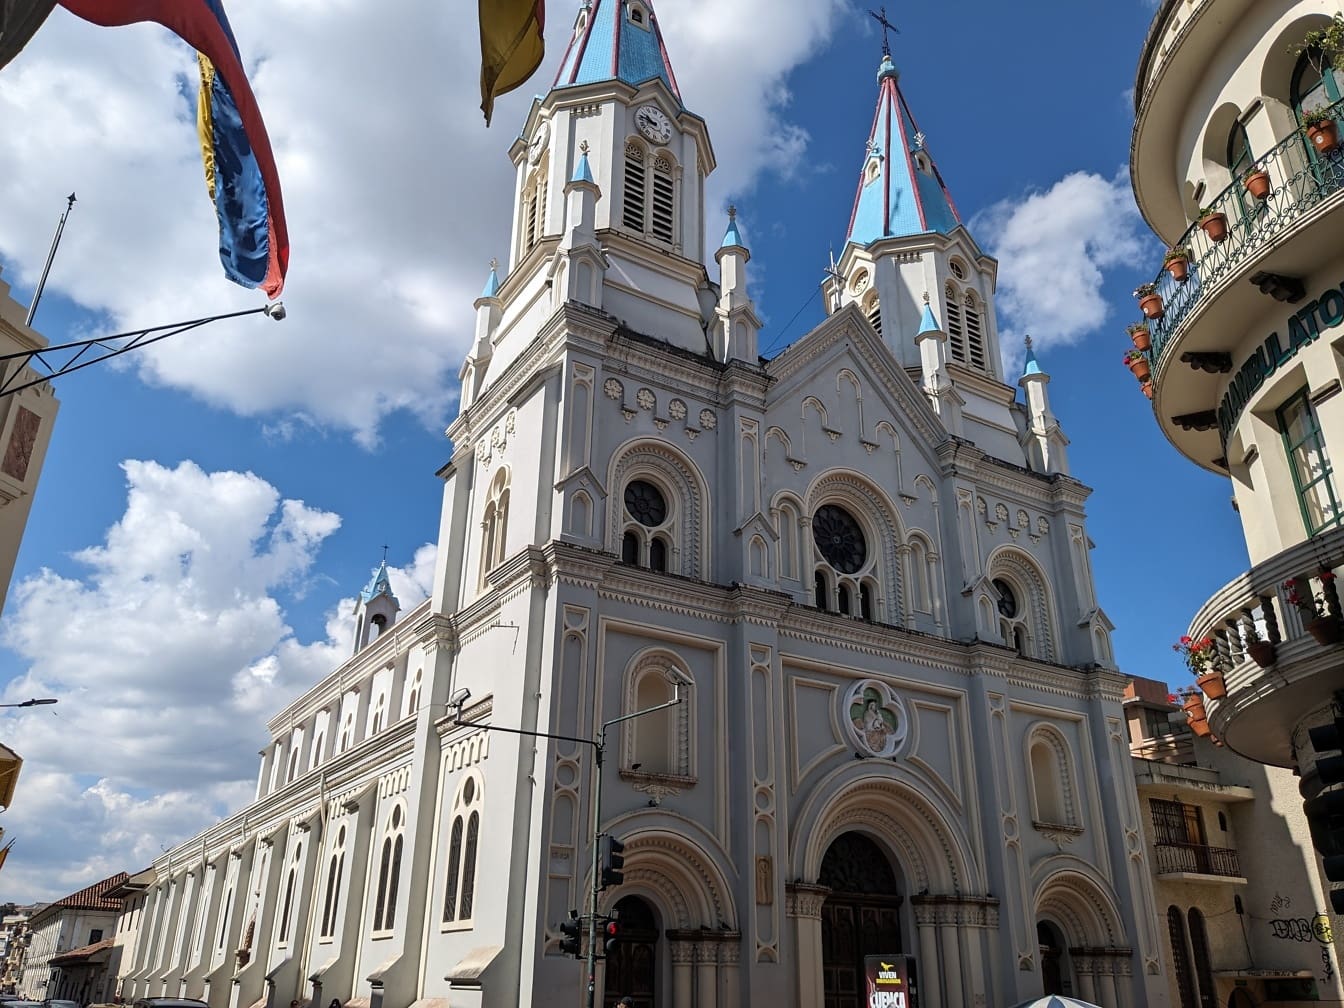 Bazilika Panny Marie Ustavičné pomoci nebo kostel sv. Alfonse (San Alfonso) ve městě Cuenca v Ekvádoru